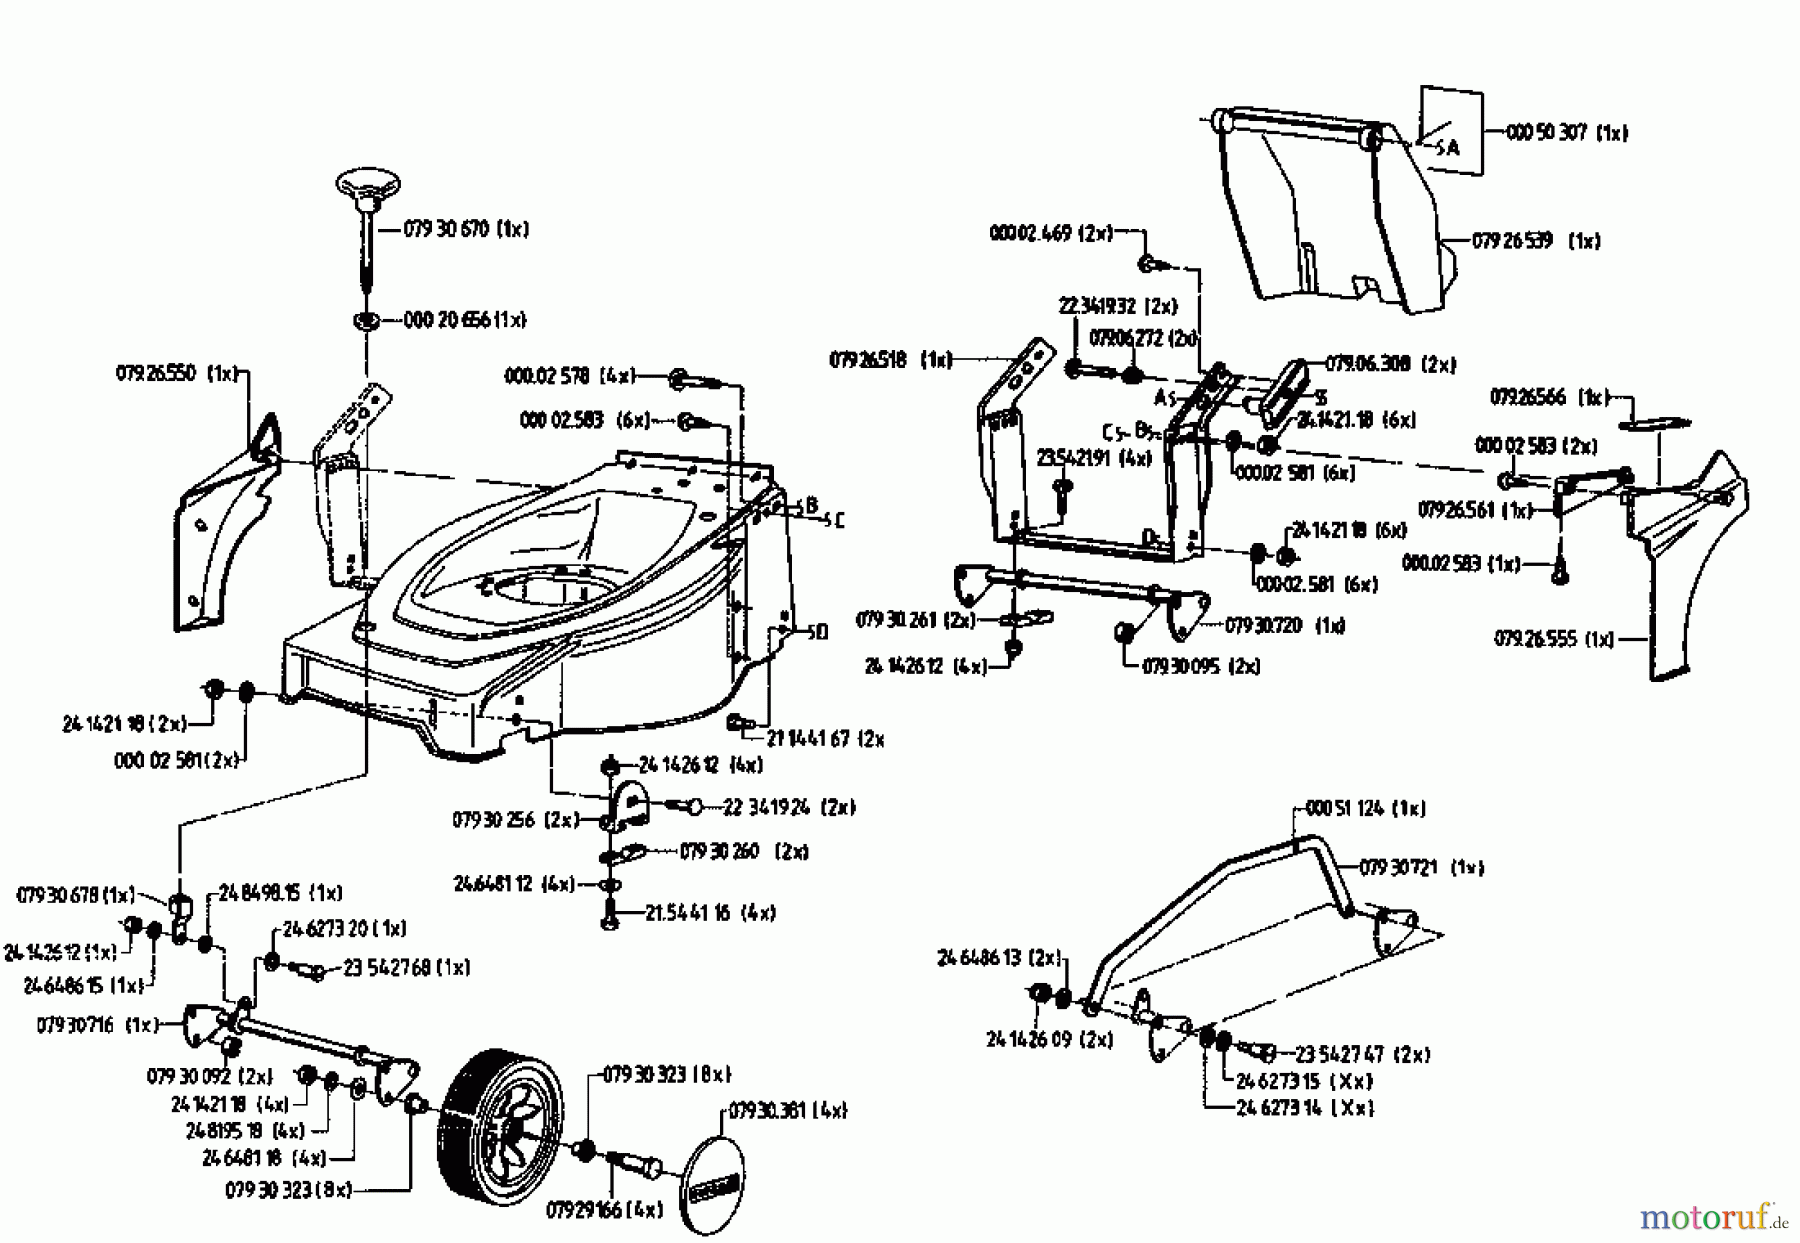  Gutbrod Tondeuse thermique HB 42 LE 04028.03  (1995) Machine de base